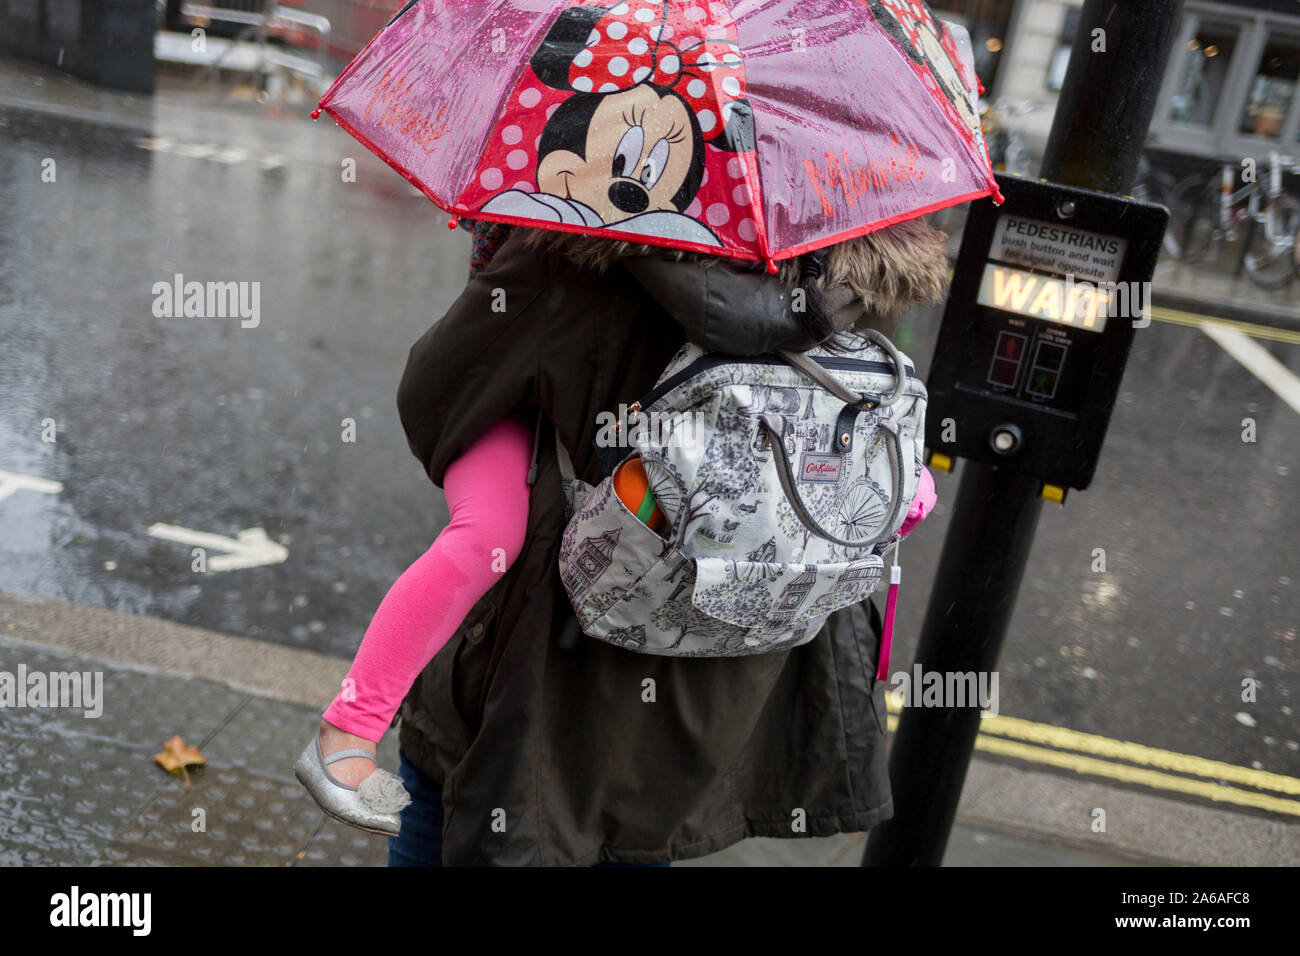 Une mère porte son enfant sous un parapluie Minnie Mouse au cours de fortes pluies sur une après-midi d'automne près de Trafalgar Square, le 24 octobre 2019, à Westminster, Londres, Angleterre. Banque D'Images